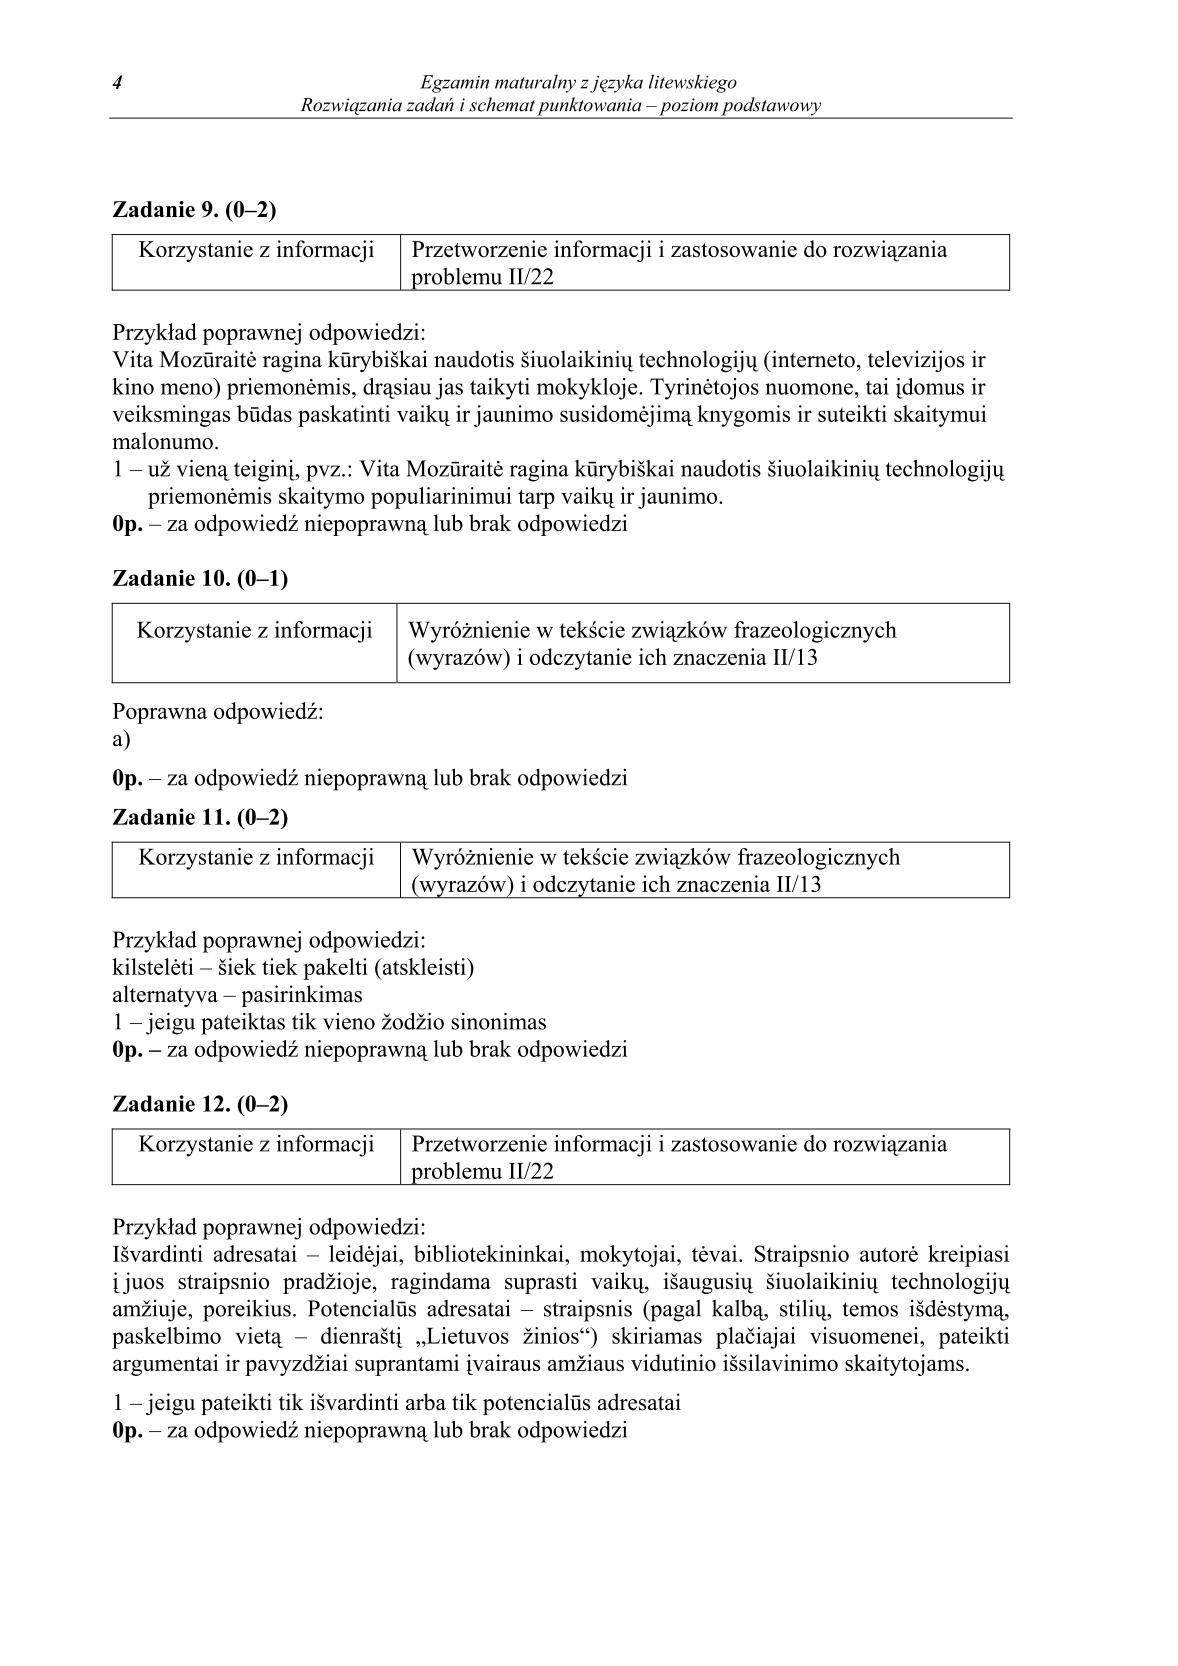 odpowiedzi-jezyk-litewski-poziom-podstawowy-matura-2014-str.4